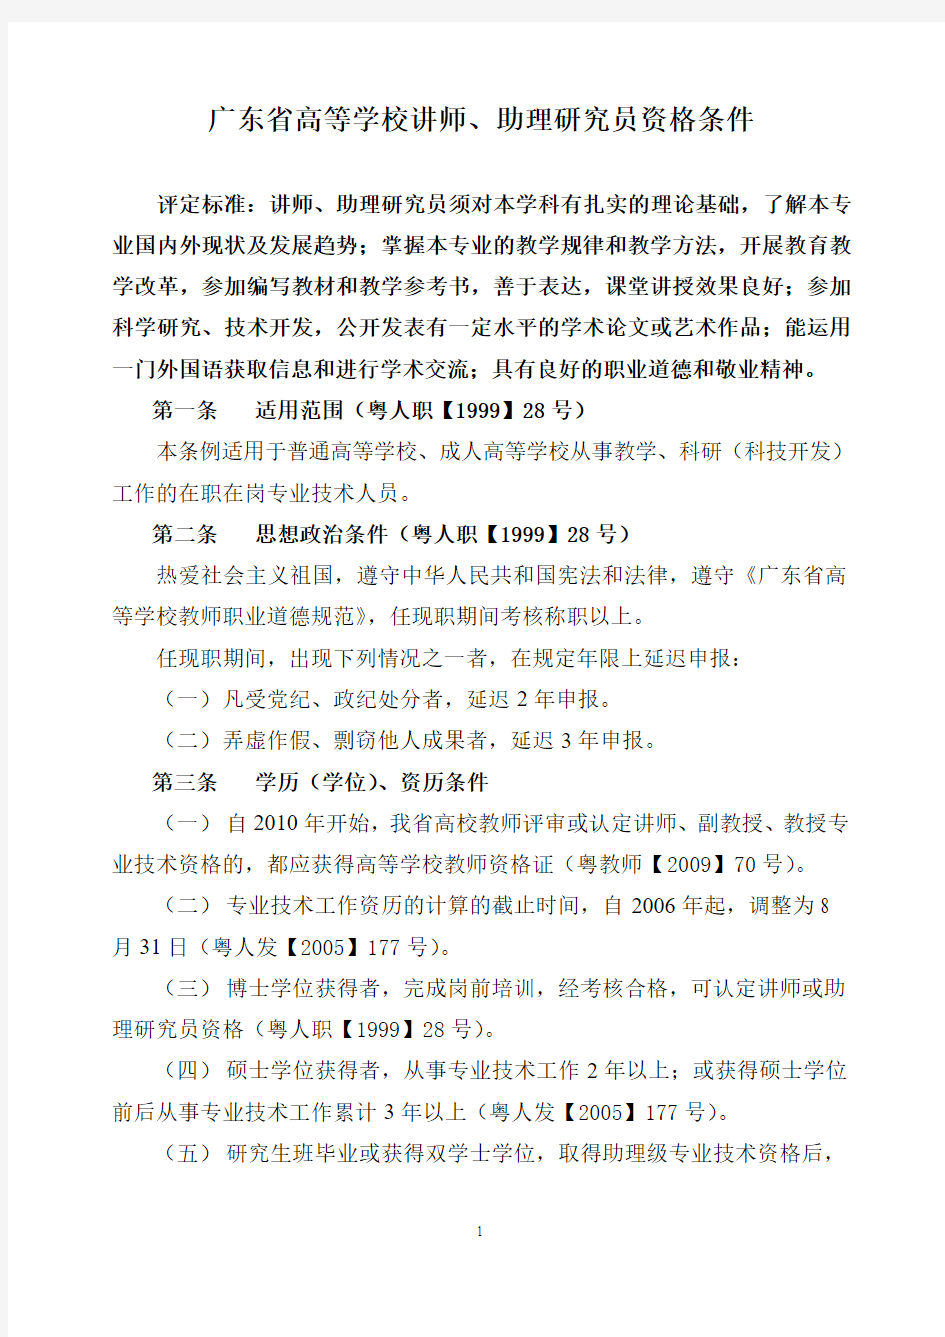 广东省高等学校讲师、助理研究员资格条件